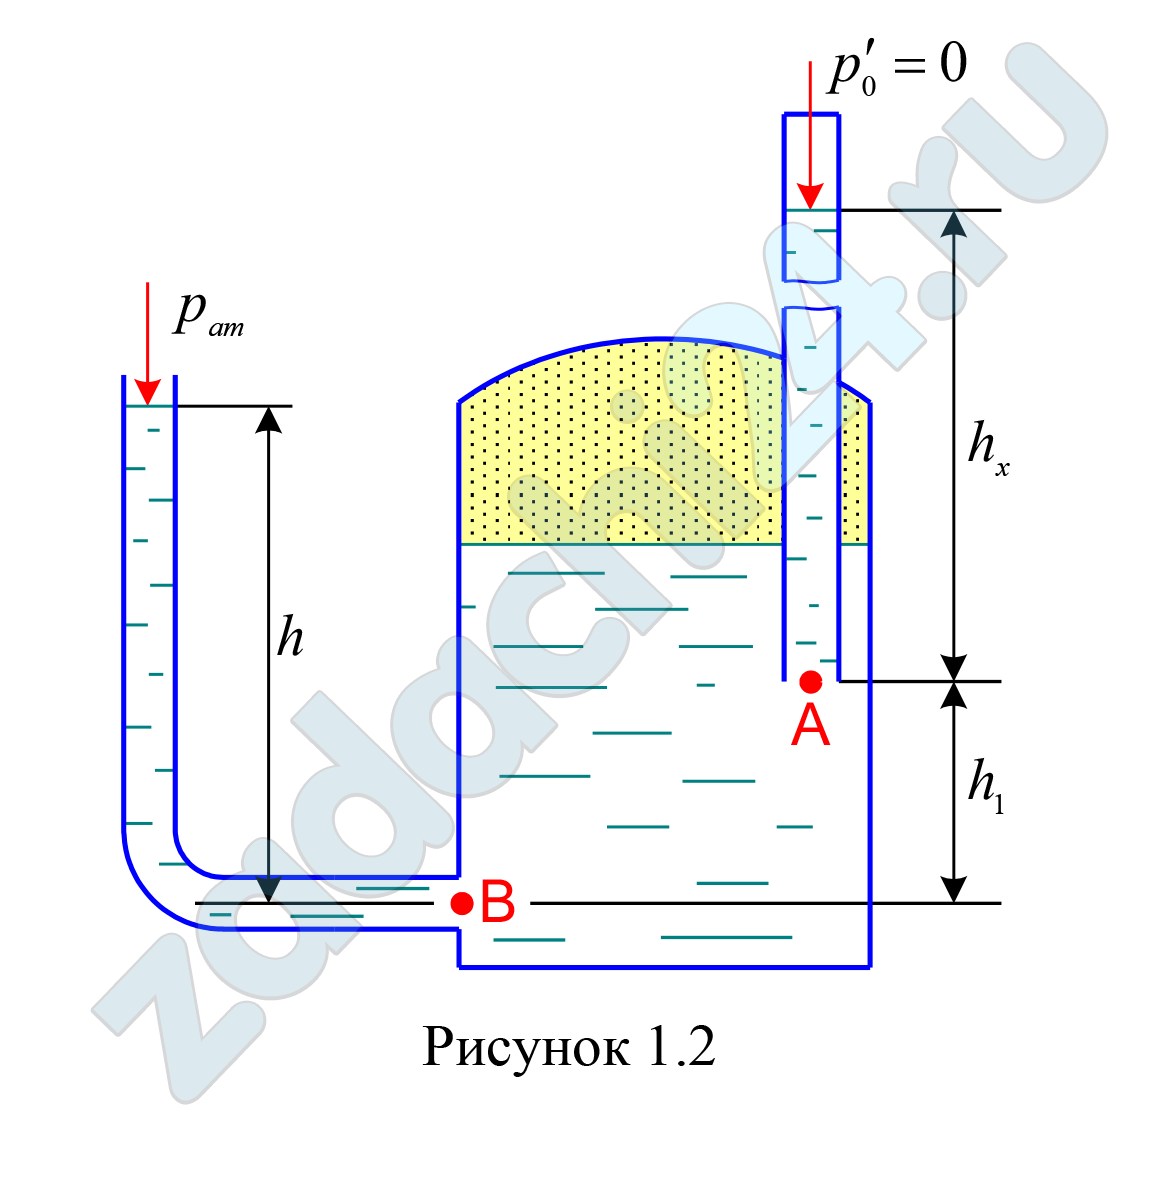 Закрытый резервуар с морской водой снабжен открытым и закрытым пьезометрами. Определить приведенную пьезометрическую высоту hх поднятия воды в закрытом пьезометре (соответствующую абсолютному гидростатическому давлению в точке А), если показание открытого пьезометра h = 1,2 м при атмосферном давлении рат, а точка А расположена выше точки В на величину h1 = 0,5 м.